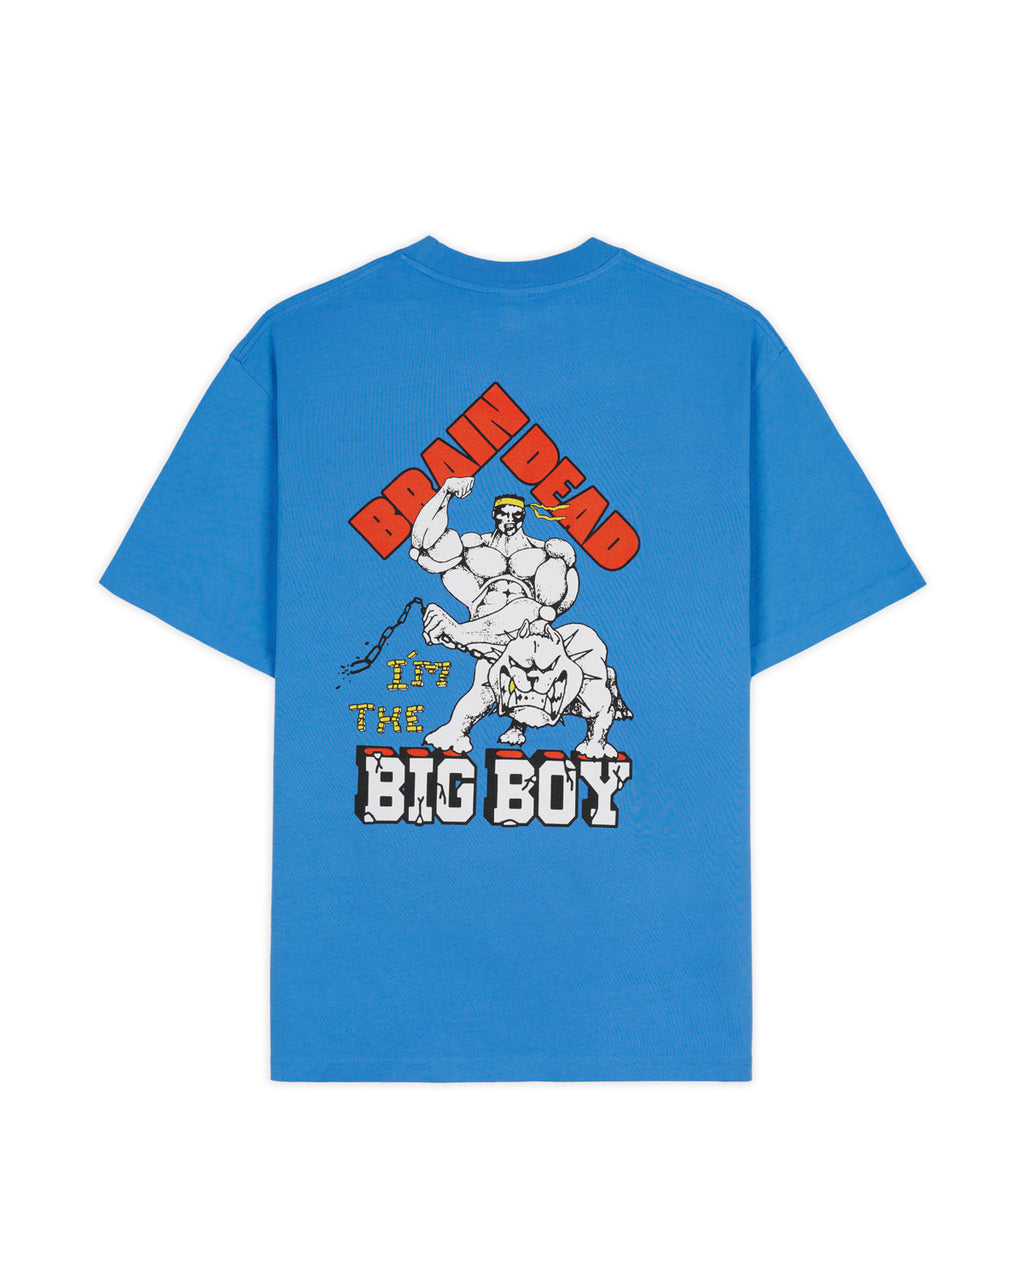 Brain Dead x Big Boy Sound & Fury T-shirt - China Blue 2